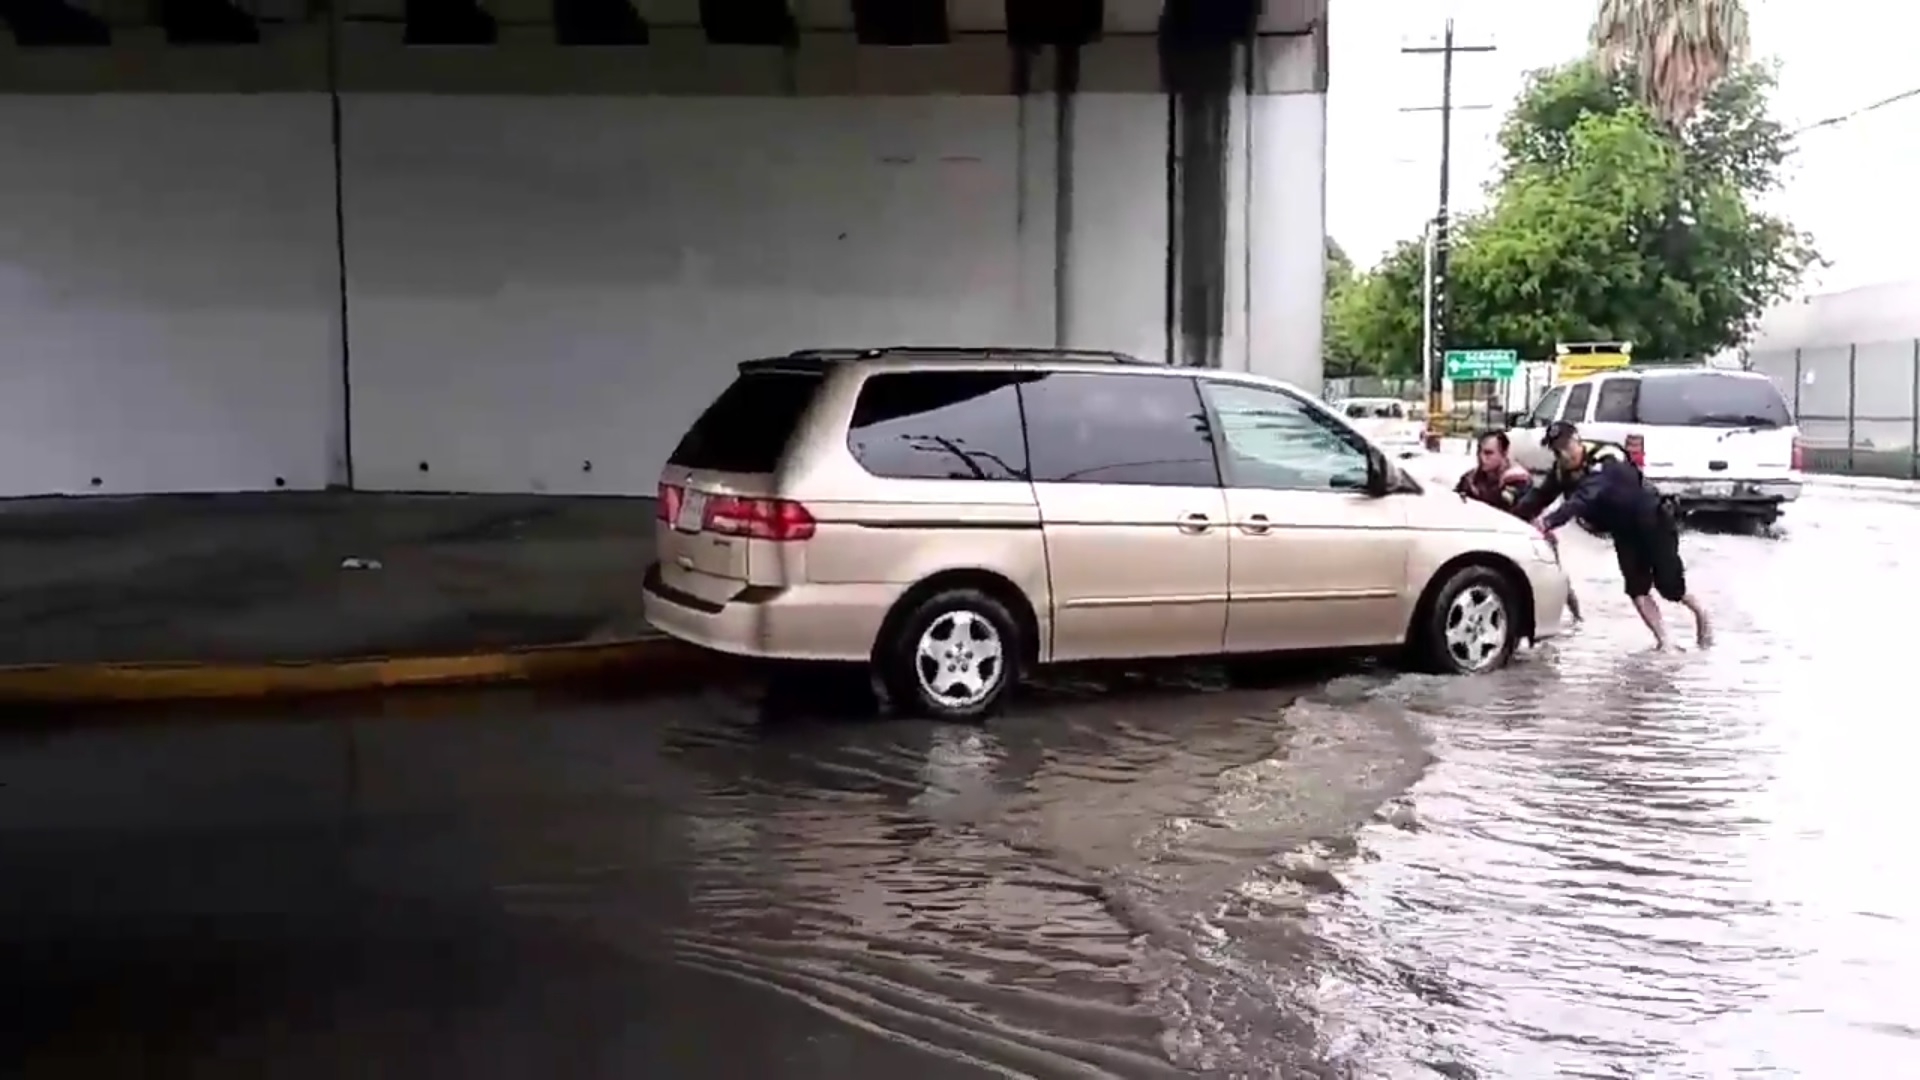 Camioneta varada en avenida del municipio de Escobedo; las precipitaciones colapsan varias zonas del área metropolitana de Monterrey (Twitter @LeydaEstradat)